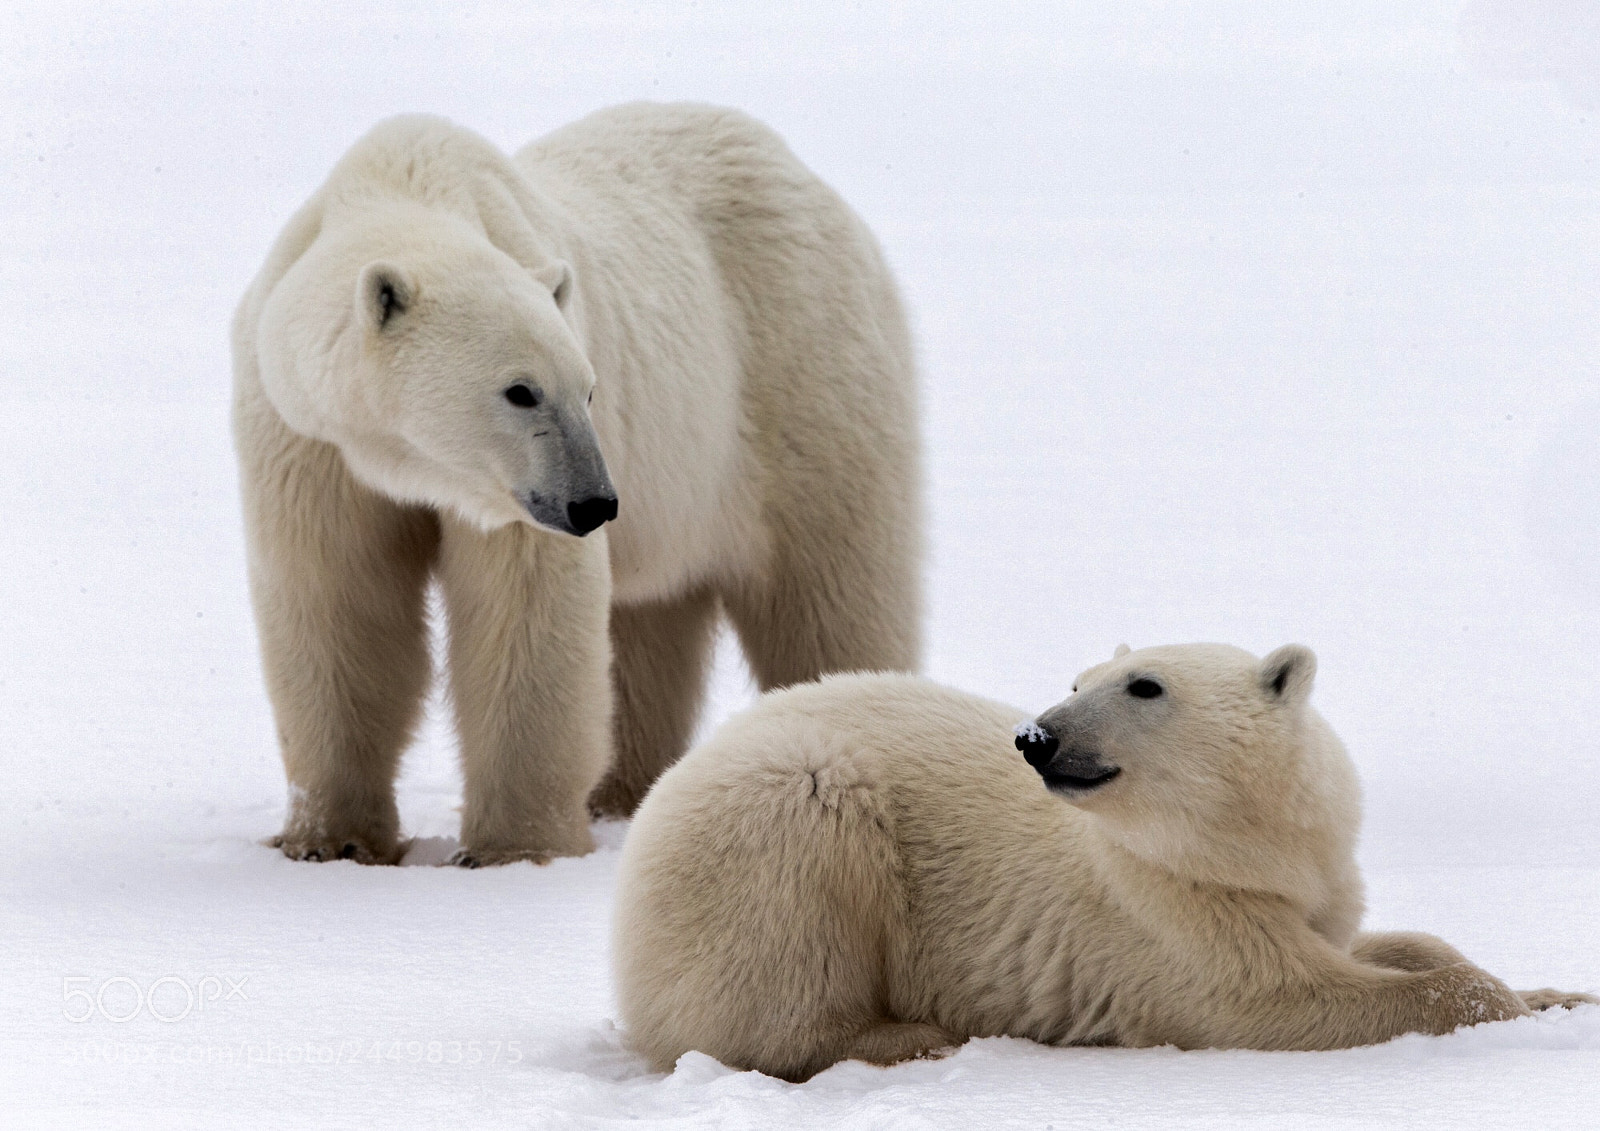 Canon EOS-1D X sample photo. Polar bear with cub photography